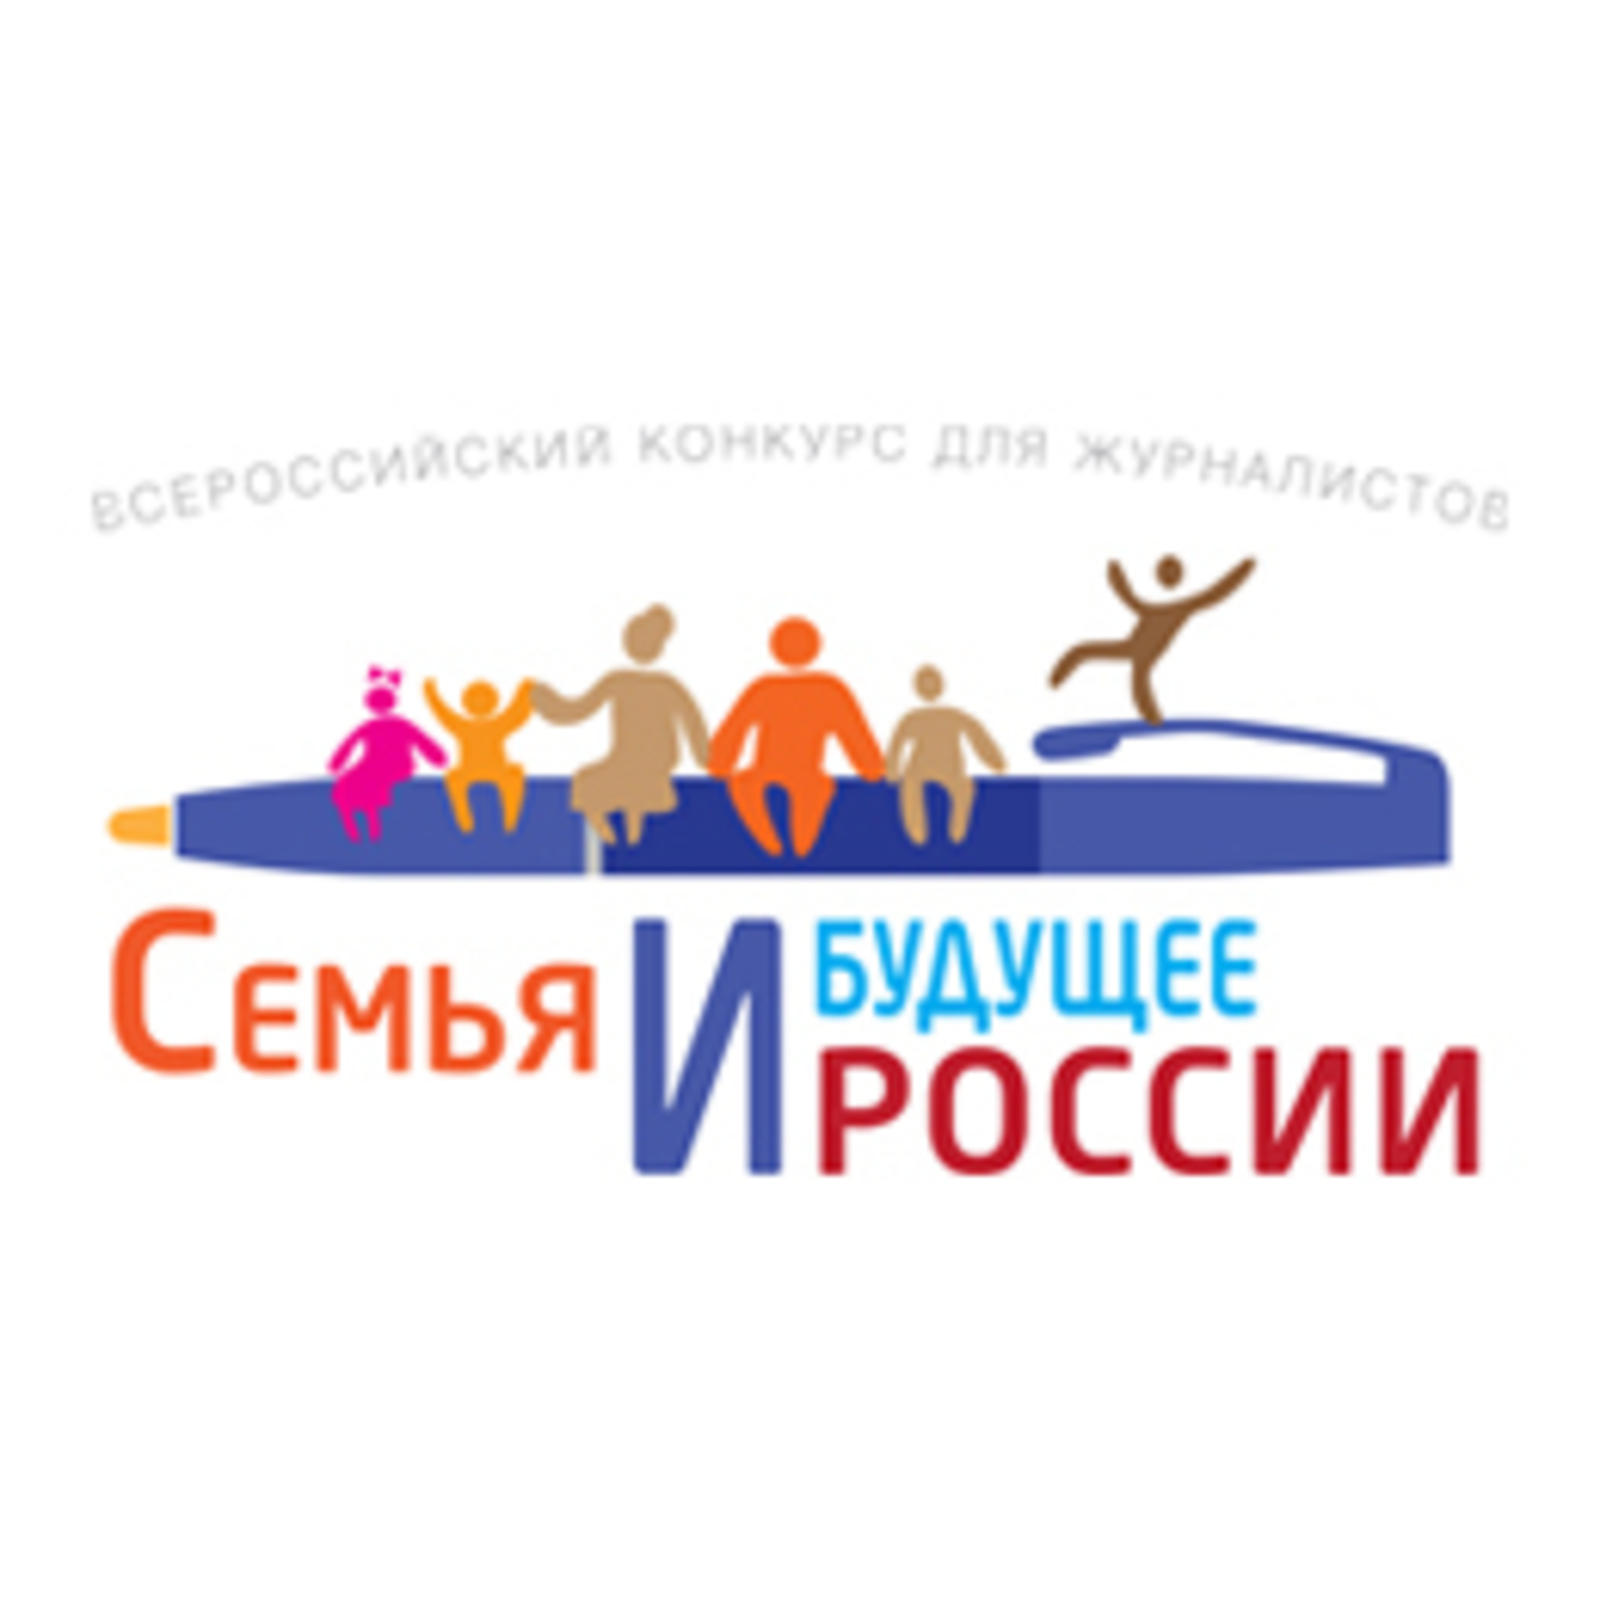 1 июня стартует конкурс для журналистов "Семья и будущее России"